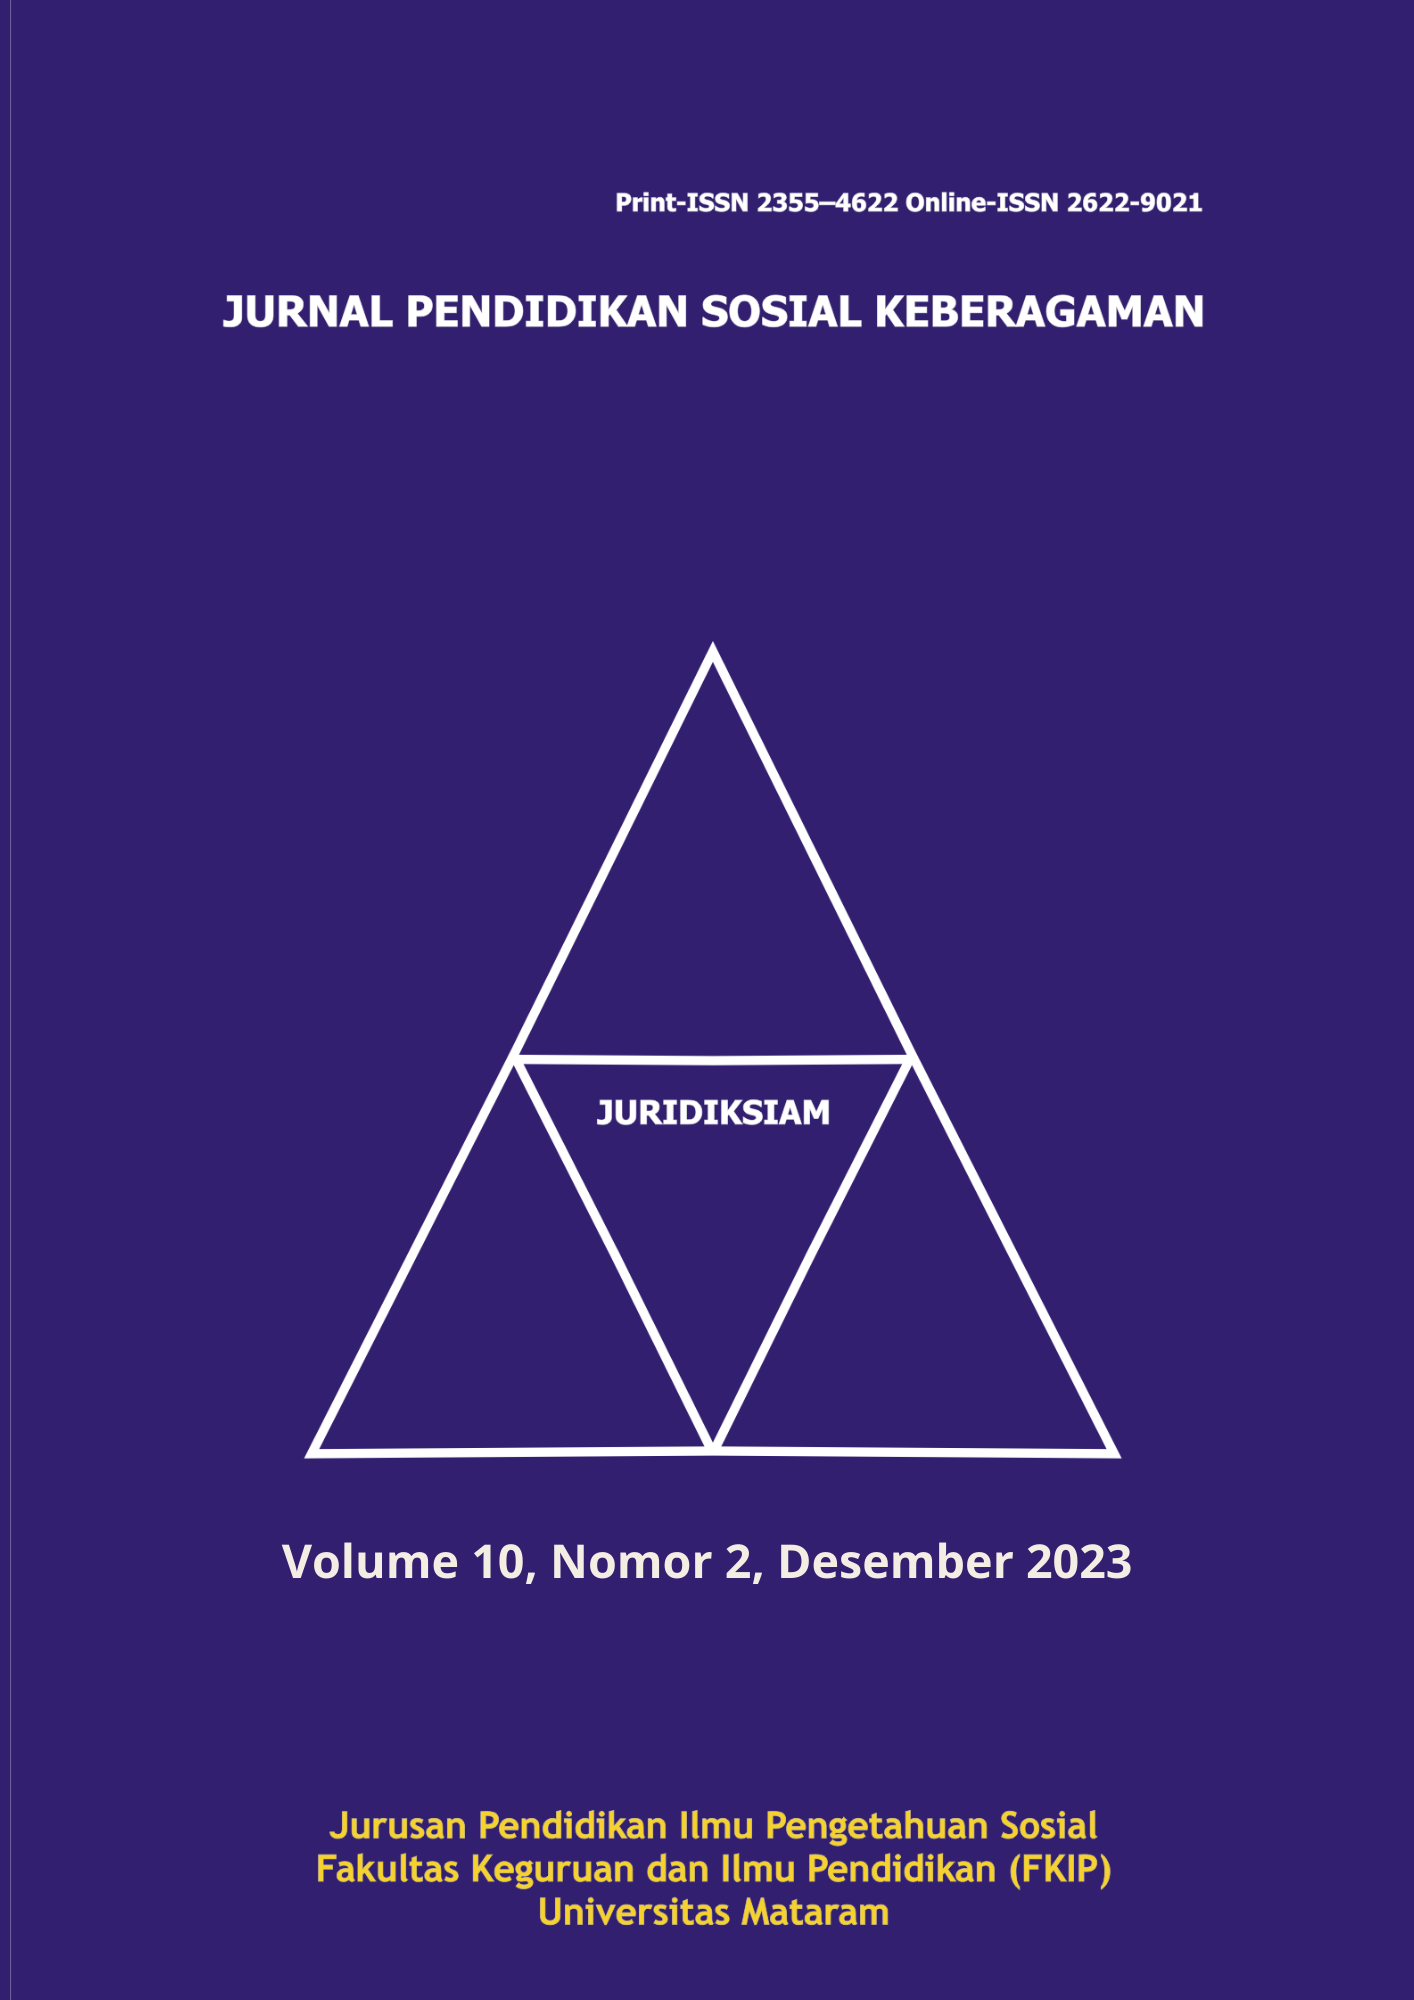 					Lihat Vol 10 No 2 (2023): Juridiksiam: Jurnal Pendidikan Sosial Keberagaman
				